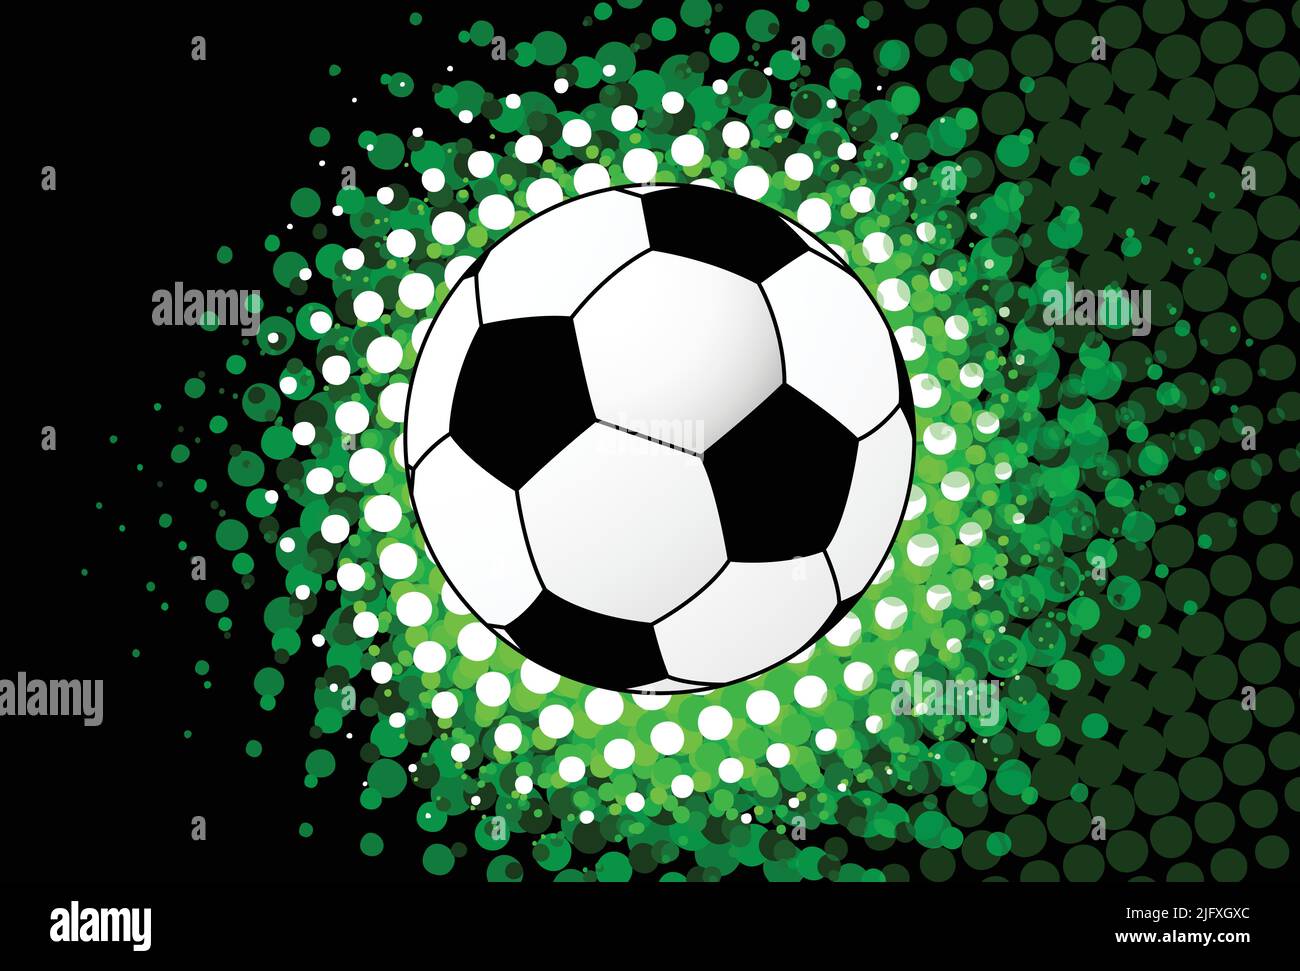 pelota de fútbol sobre fondo de salpicadura de semitonos - arte vectorial Ilustración del Vector